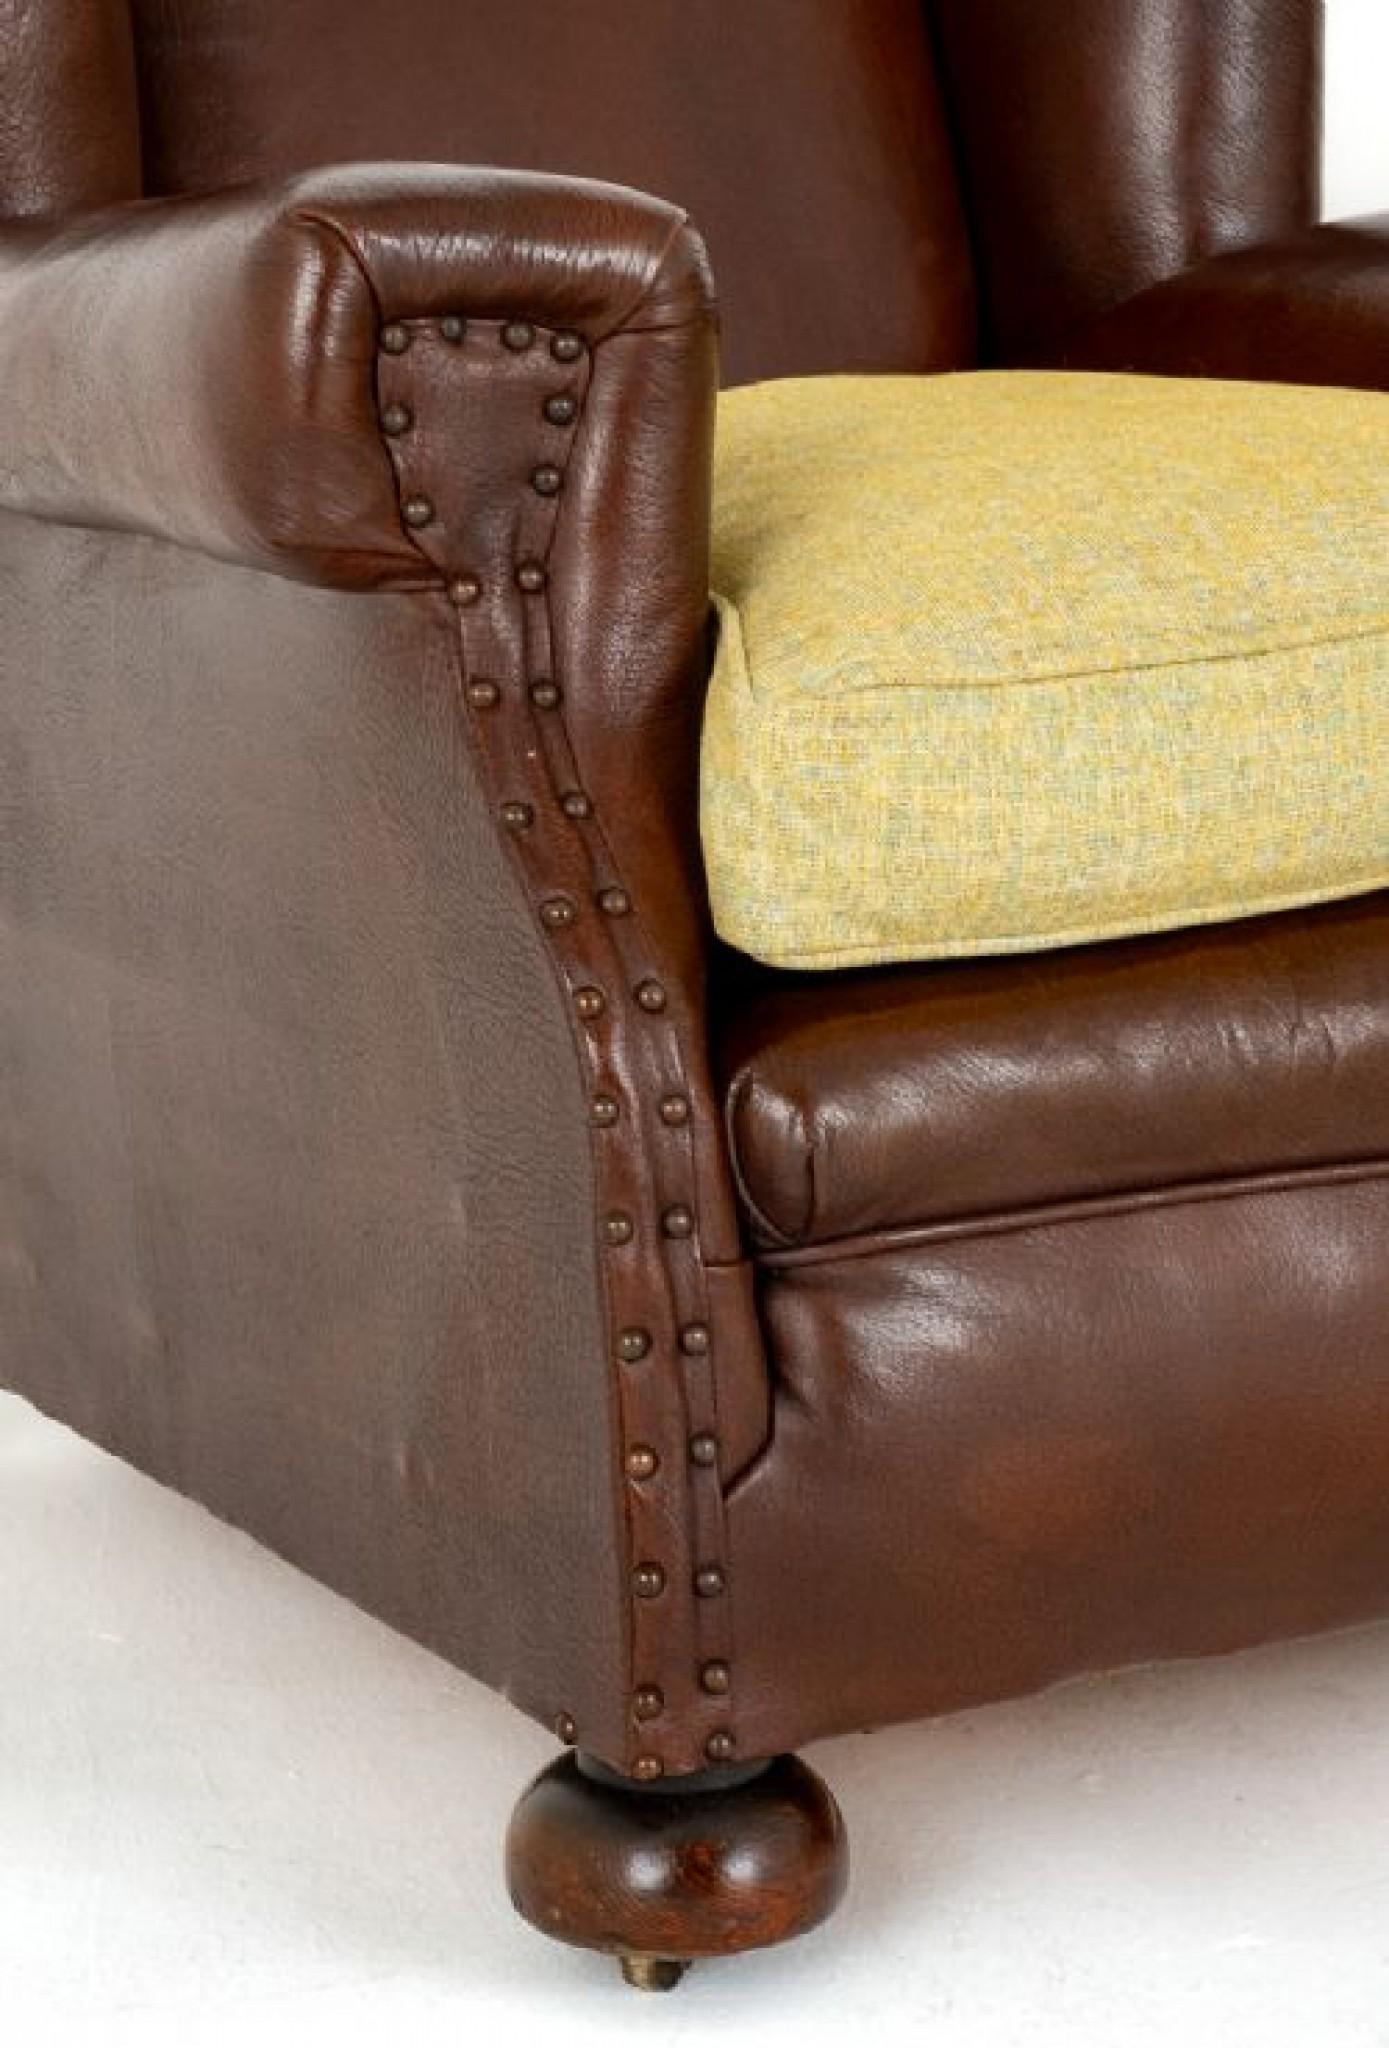 Paire de fauteuils club en cuir de style victorien.
Circa 1900
Ces fauteuils club en cuir sont dotés d'un dossier en forme d'aile traditionnel et de larges accoudoirs.
Les chaises reposent sur des pieds tournés en forme de chignon.
Chaque chaise